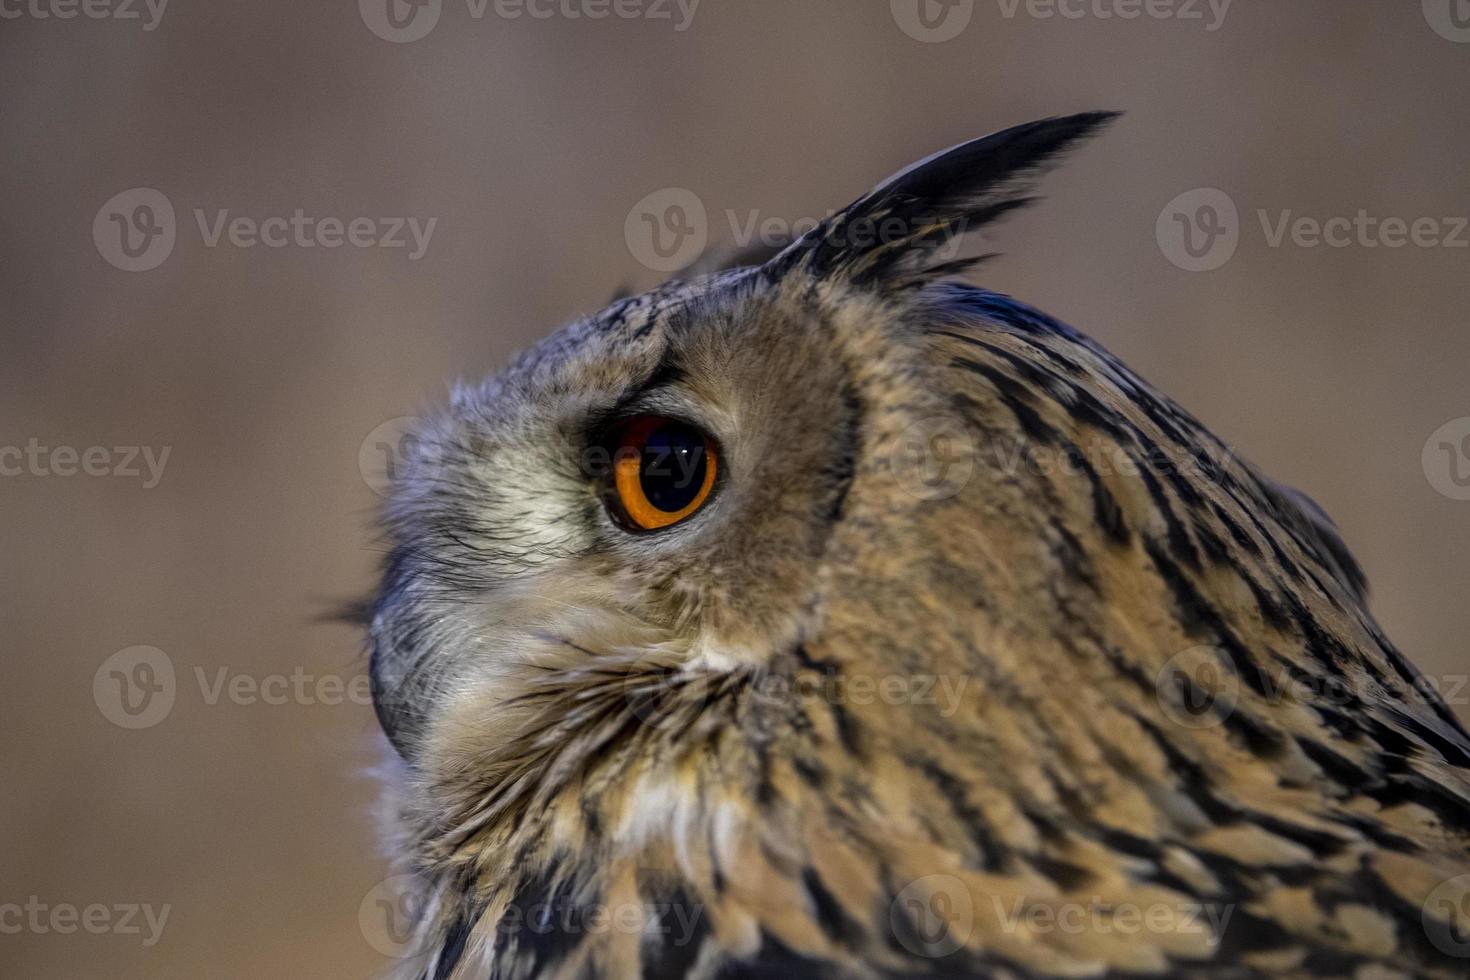 owl eye detail close up macro photo